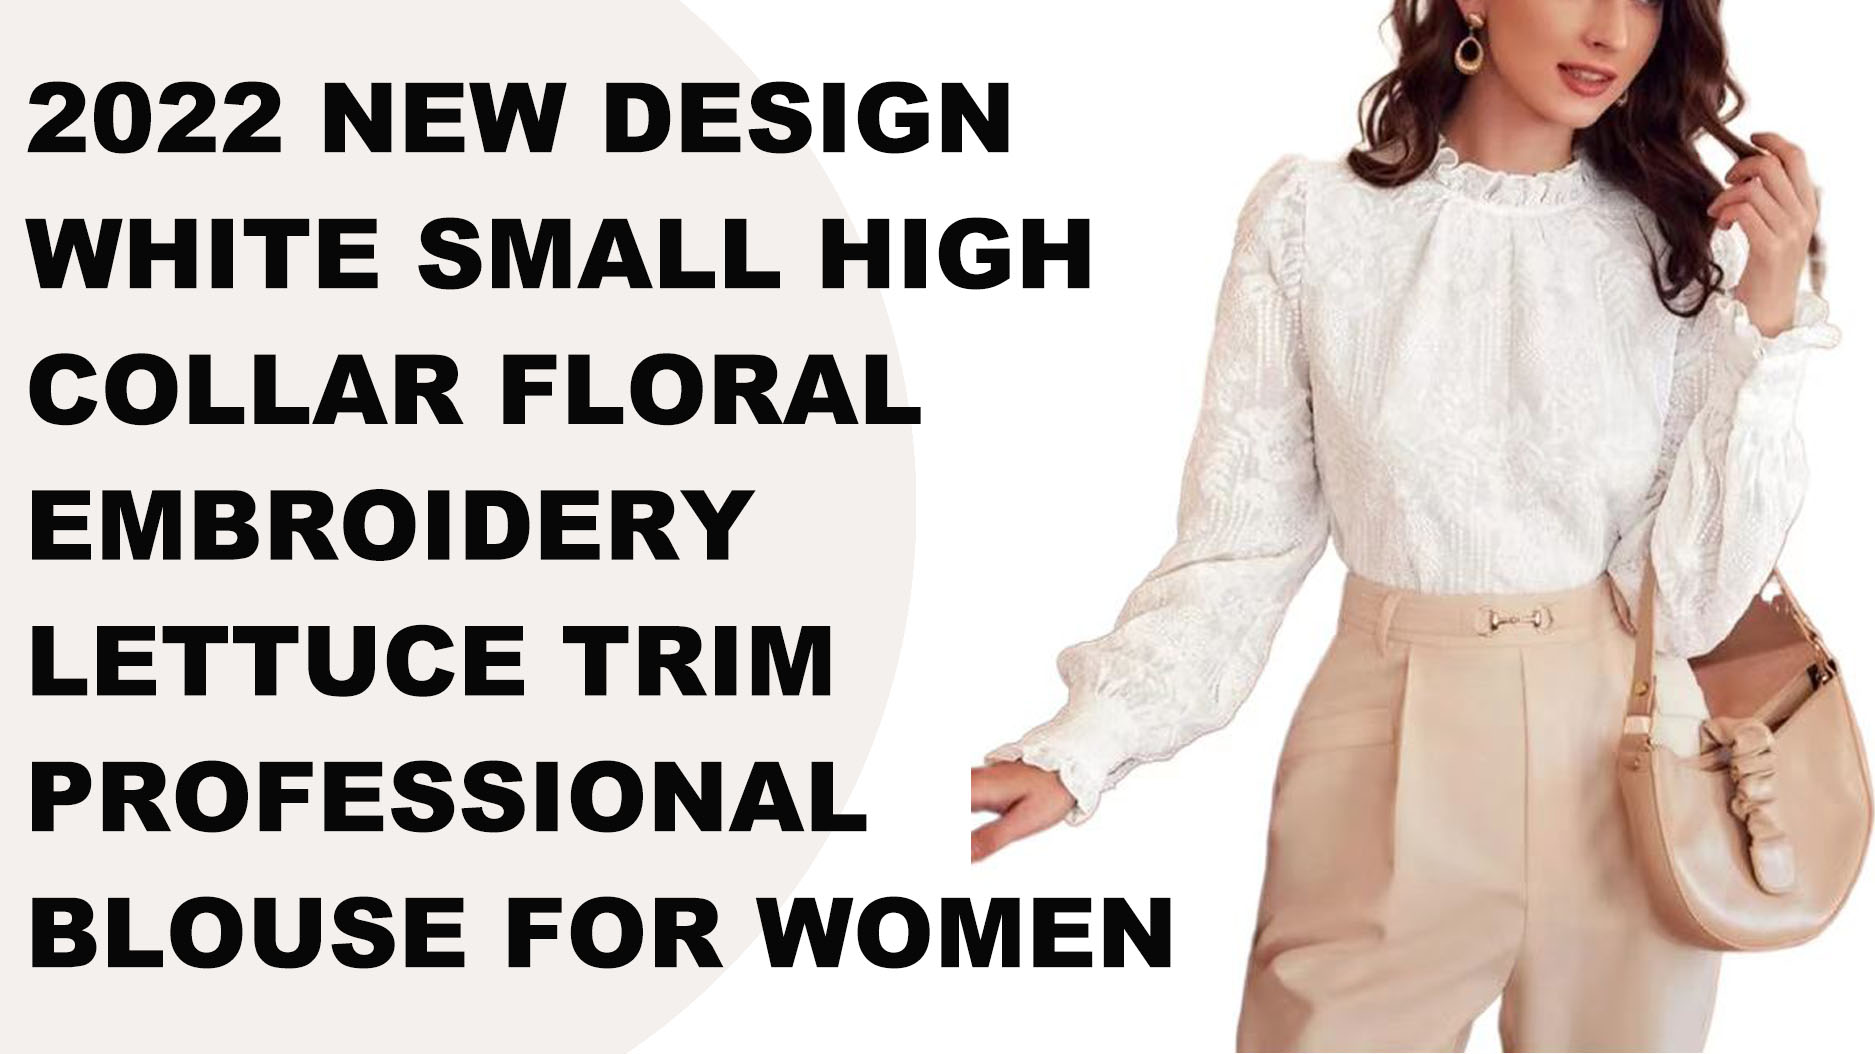 تصميم جديد لعام 2022، بلوزة احترافية بيضاء صغيرة ذات ياقة عالية ومطرزة بالزهور ومزخرفة بالخس للنساء